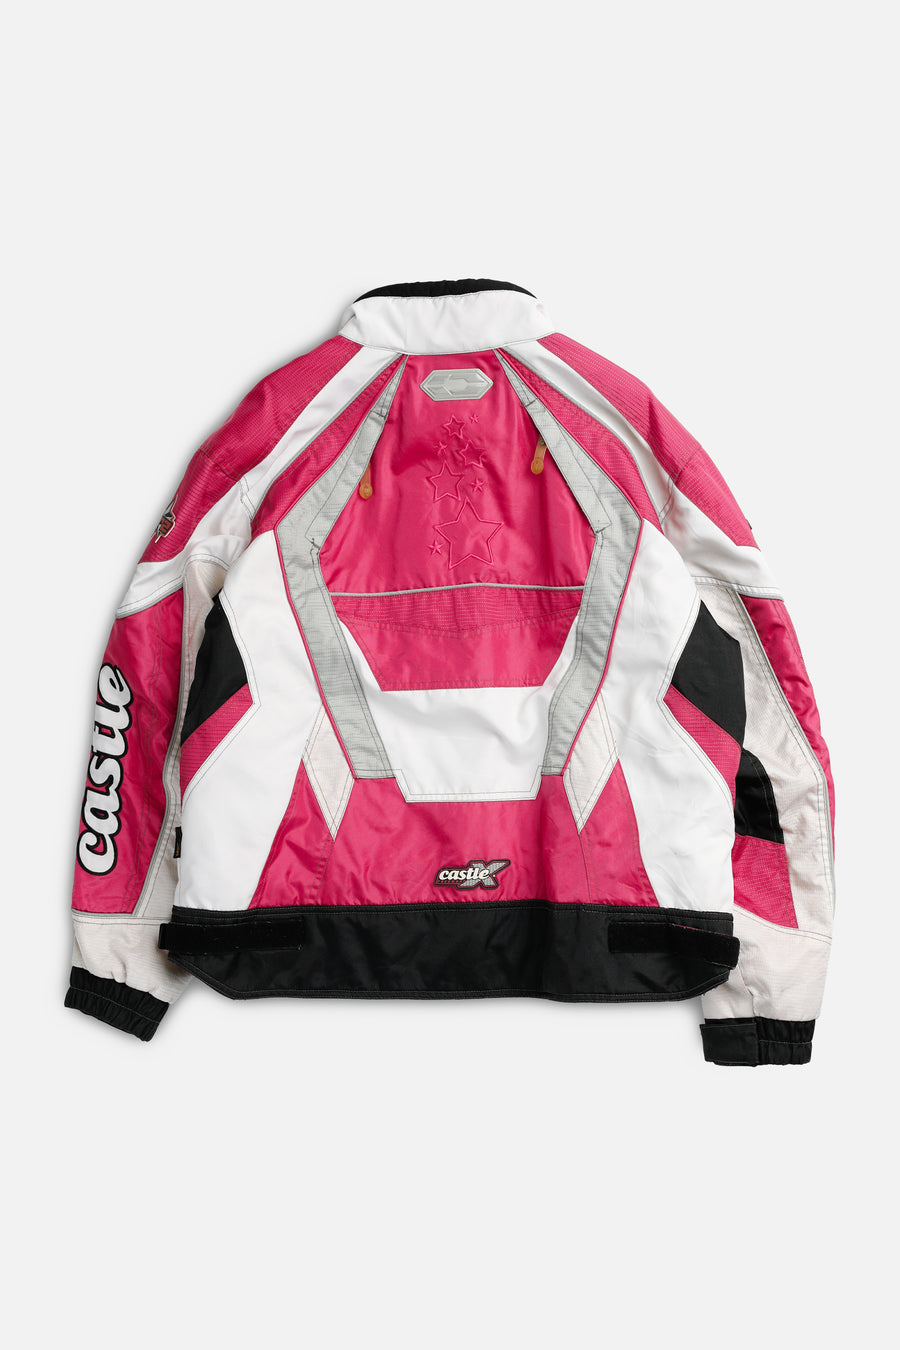 Vintage Racing Jacket - Women's XXL